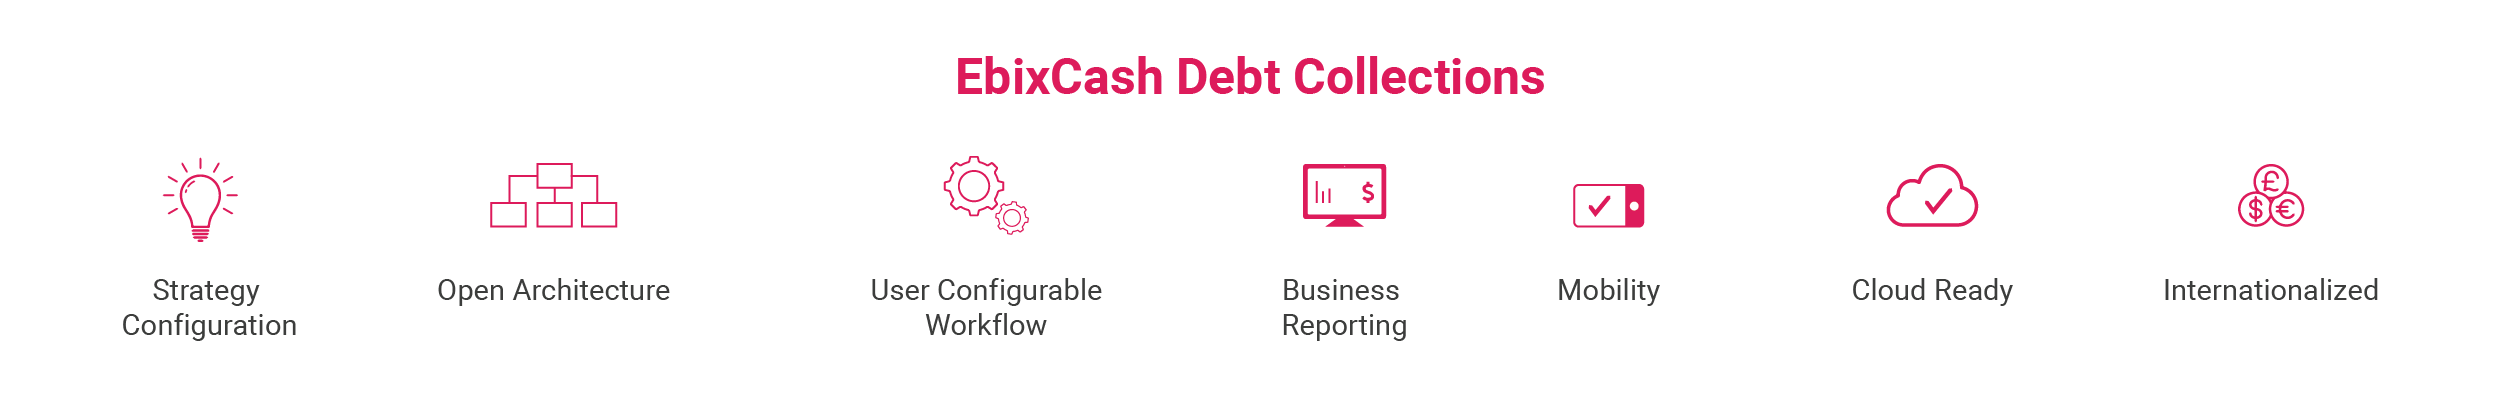 EbixCash Debt Collections